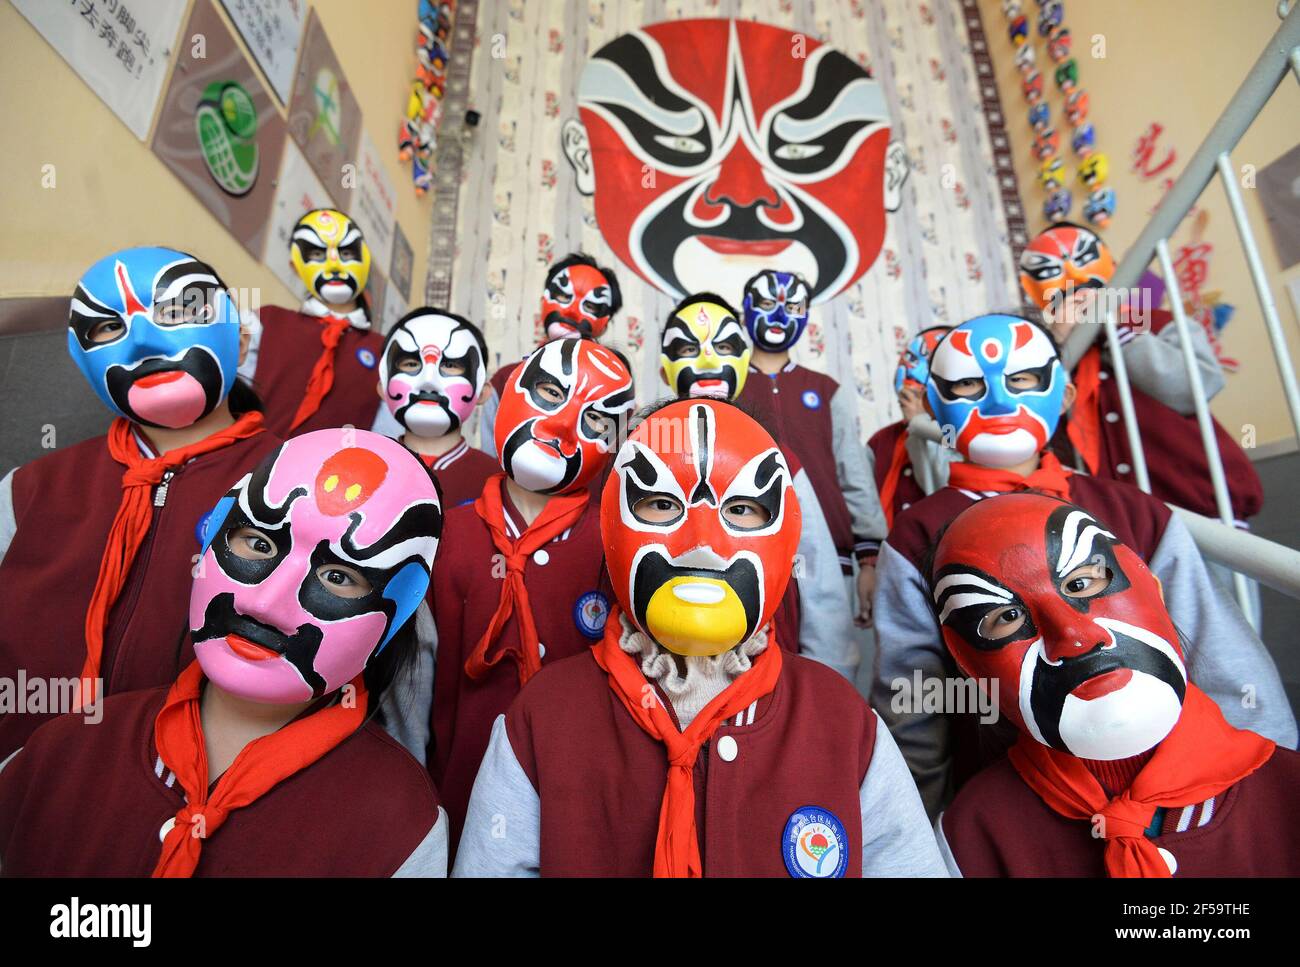 HANDAN, CHINA - 25. MÄRZ 2021 - Studenten s show bemalte theatralische Gesichts Make-up in Handan, Nordchina Provinz Hebei, 25. März 2021. Der 27th. März ist Welttheater-Tag. (Foto von Hao Qunying / Costfoto/Sipa USA) Stockfoto